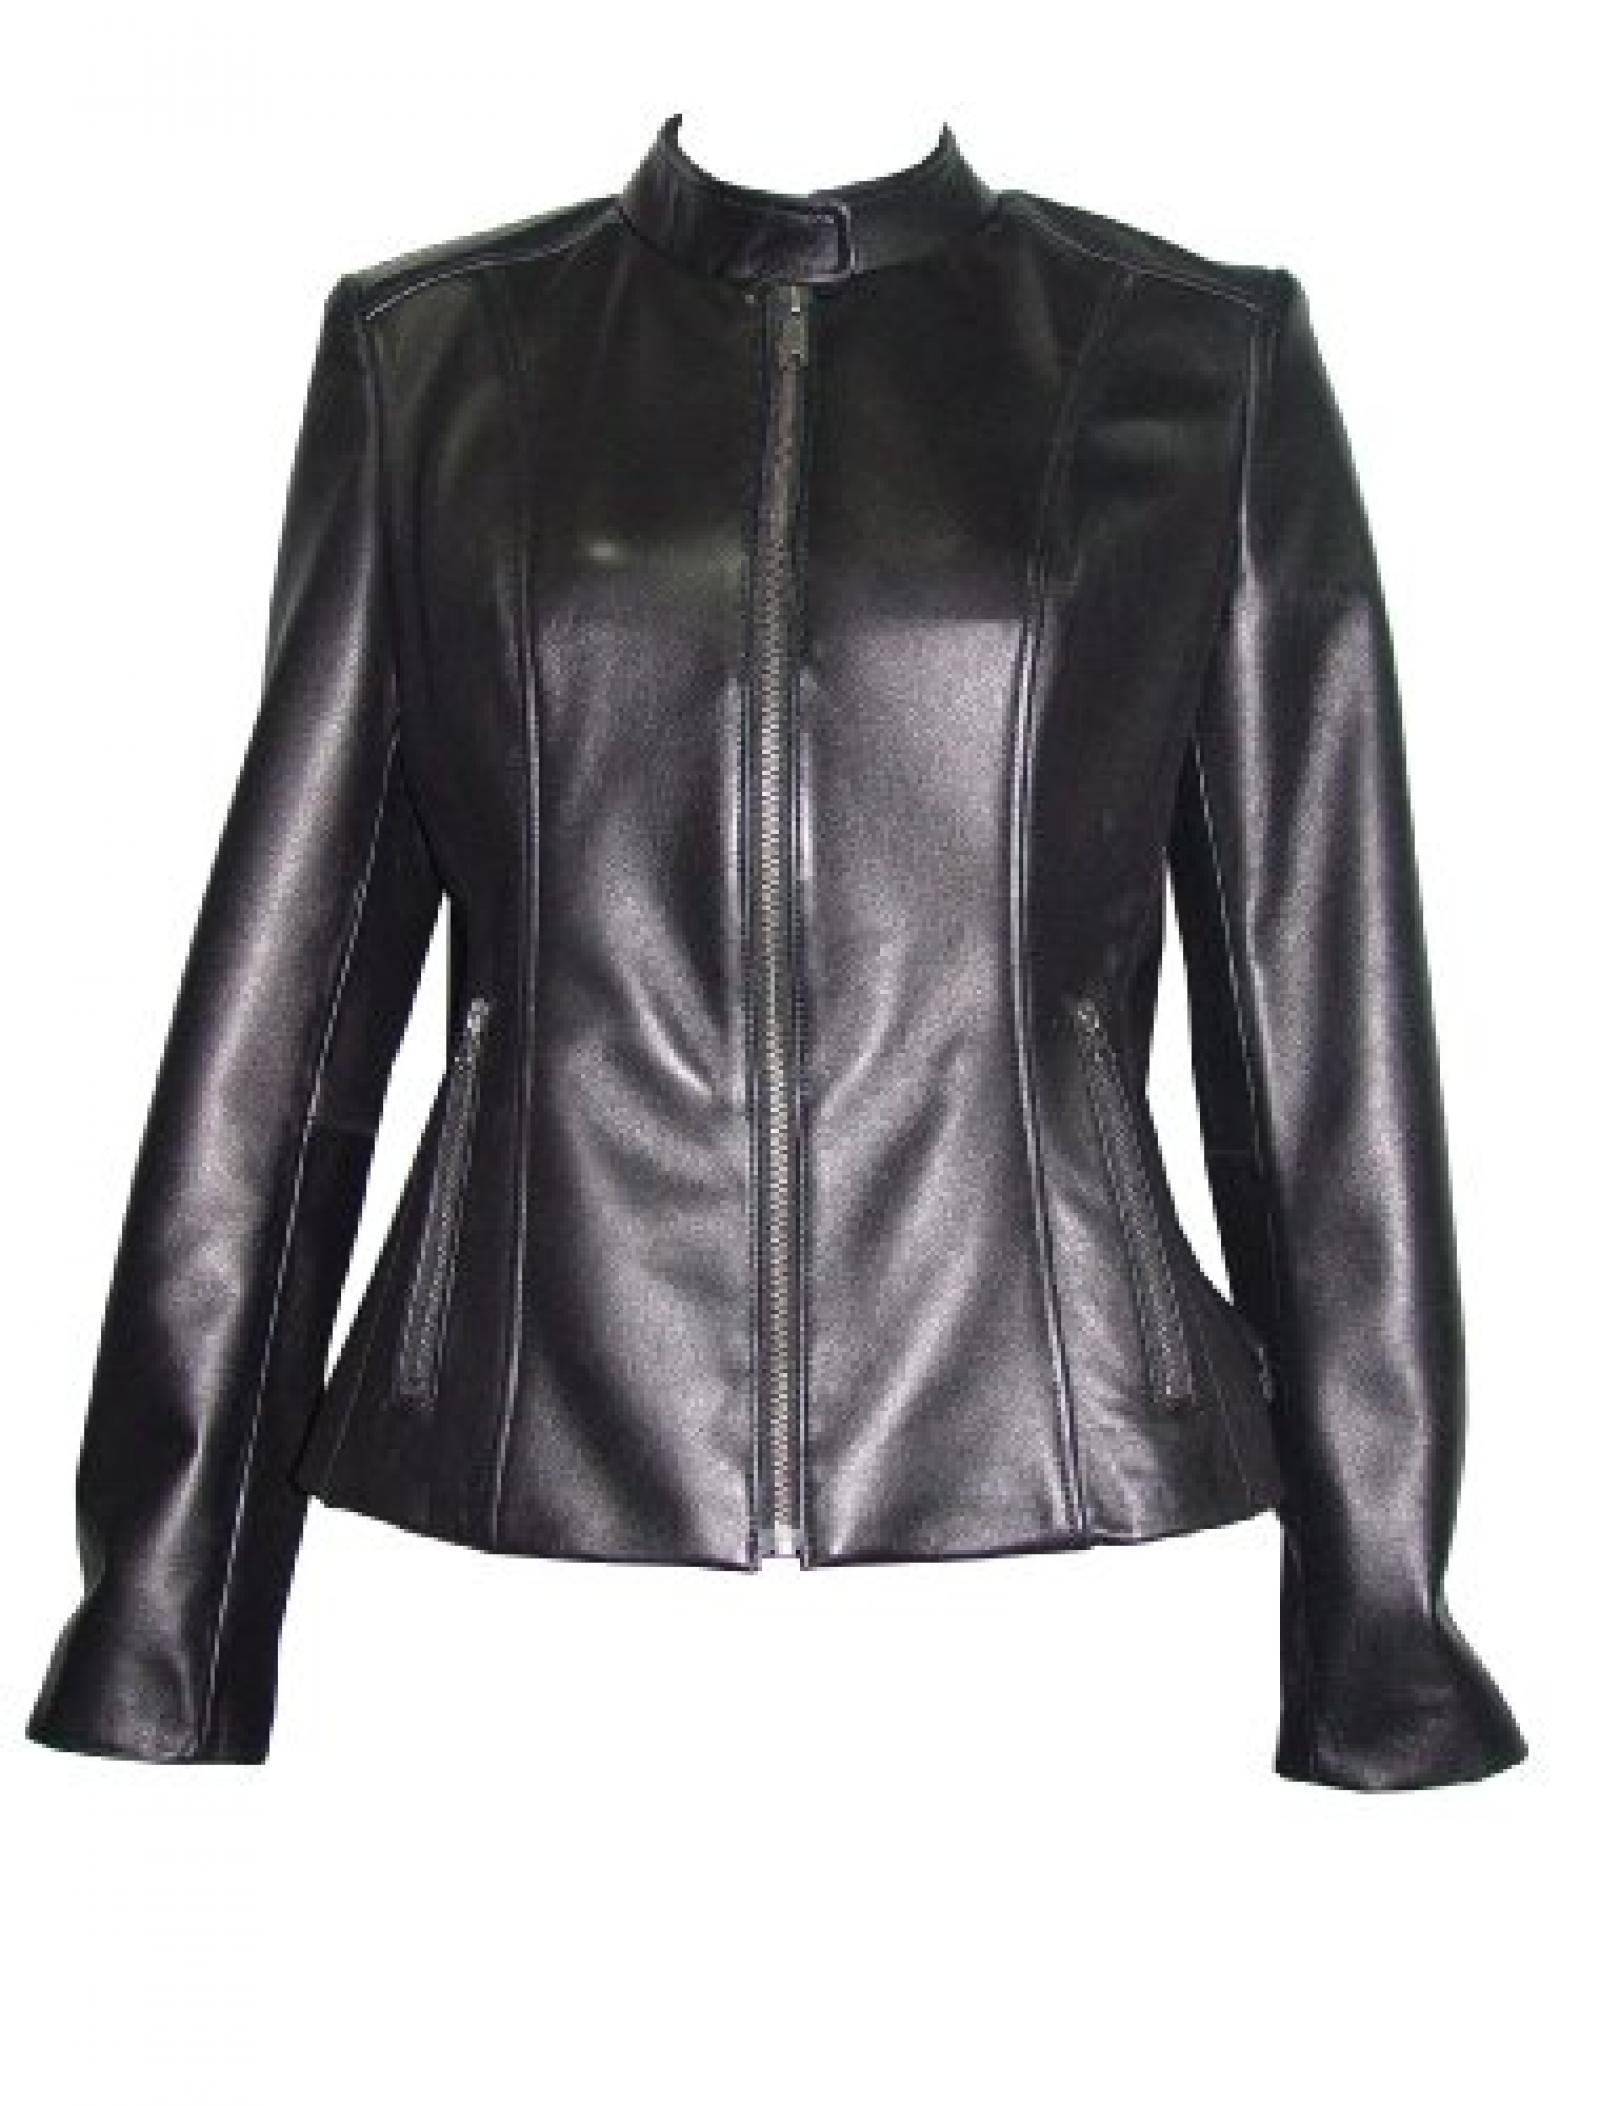 Nettailor Women 4062 Lamb Leather Motorcycle Jacket 